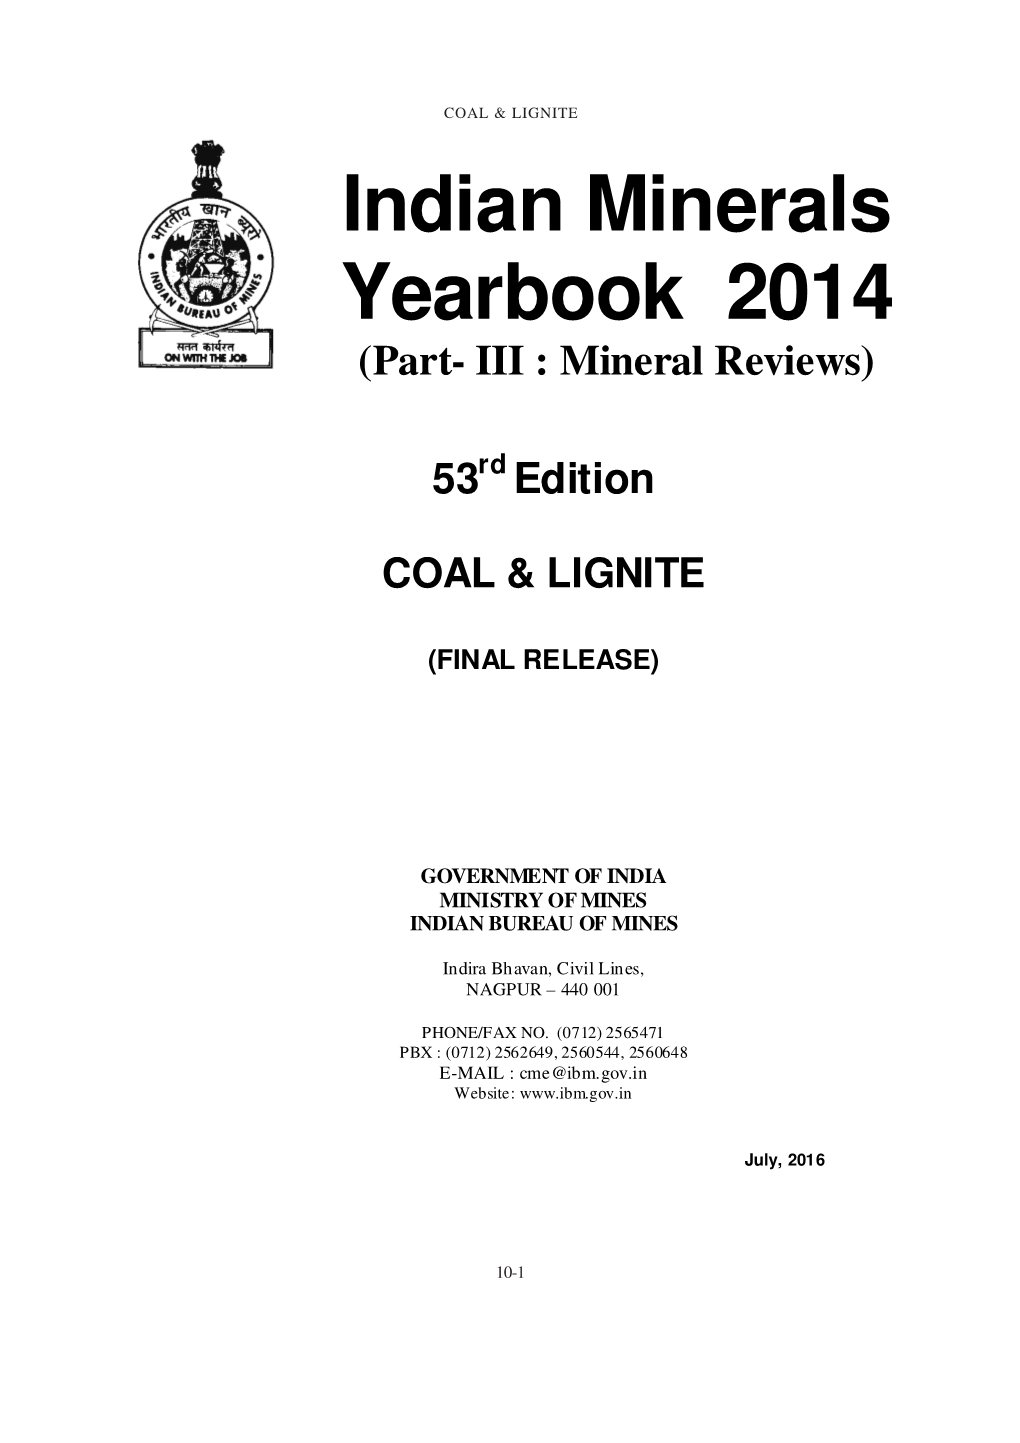 Coal & Lignite